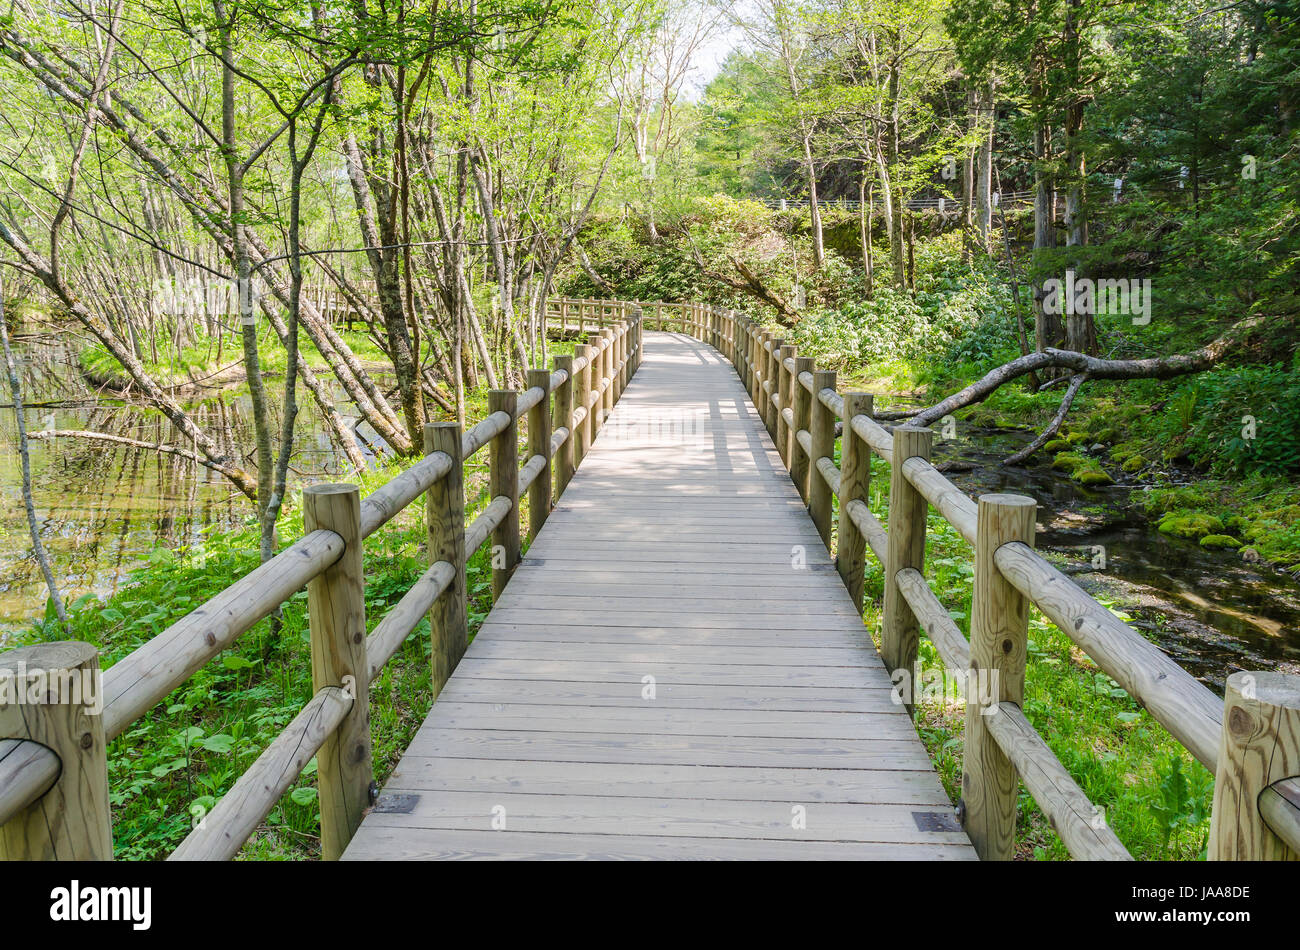 Wooden path and green environment at kamikochi japan Stock Photo